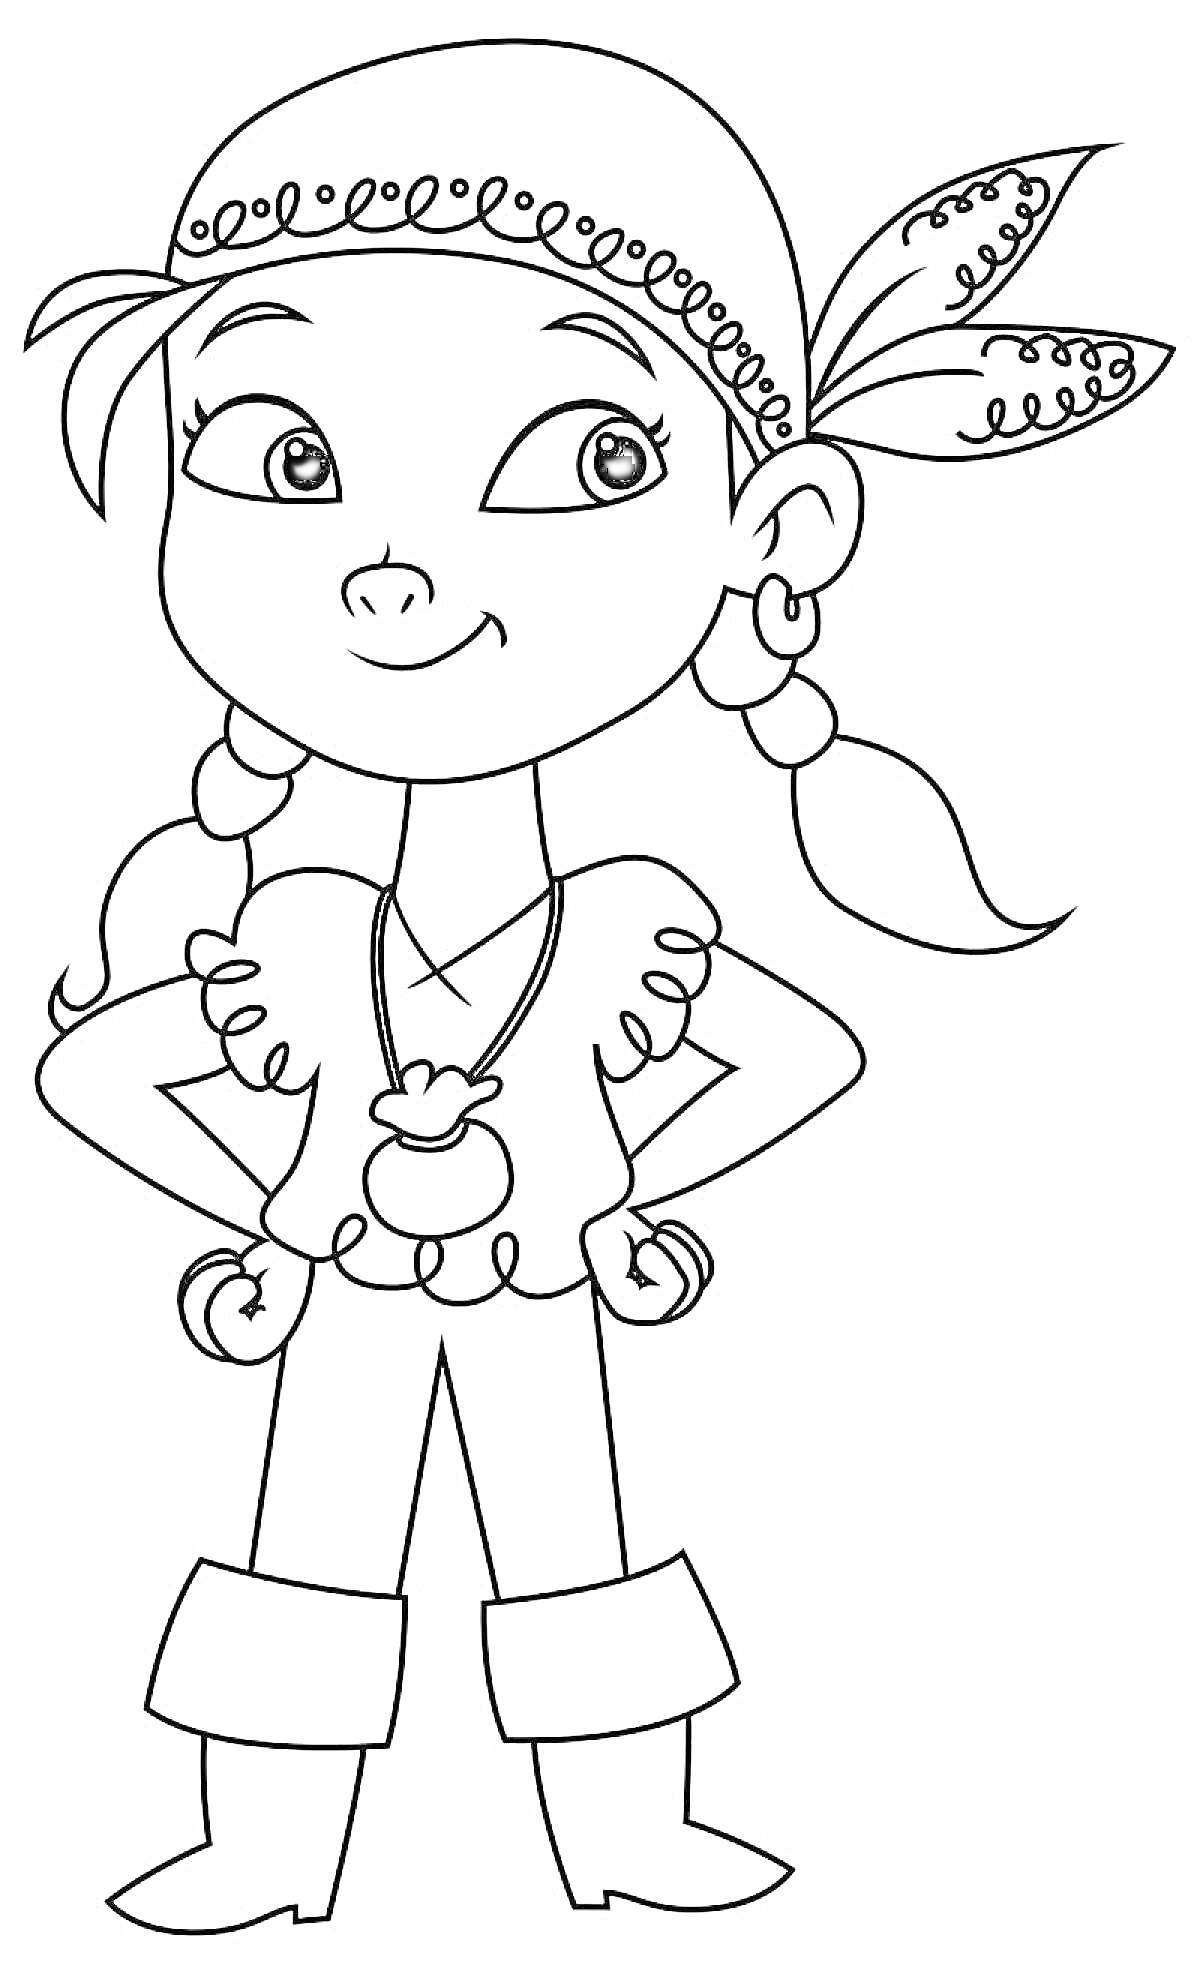 Раскраска Девочка-пират в бандане с подвеской на шее и серьгами